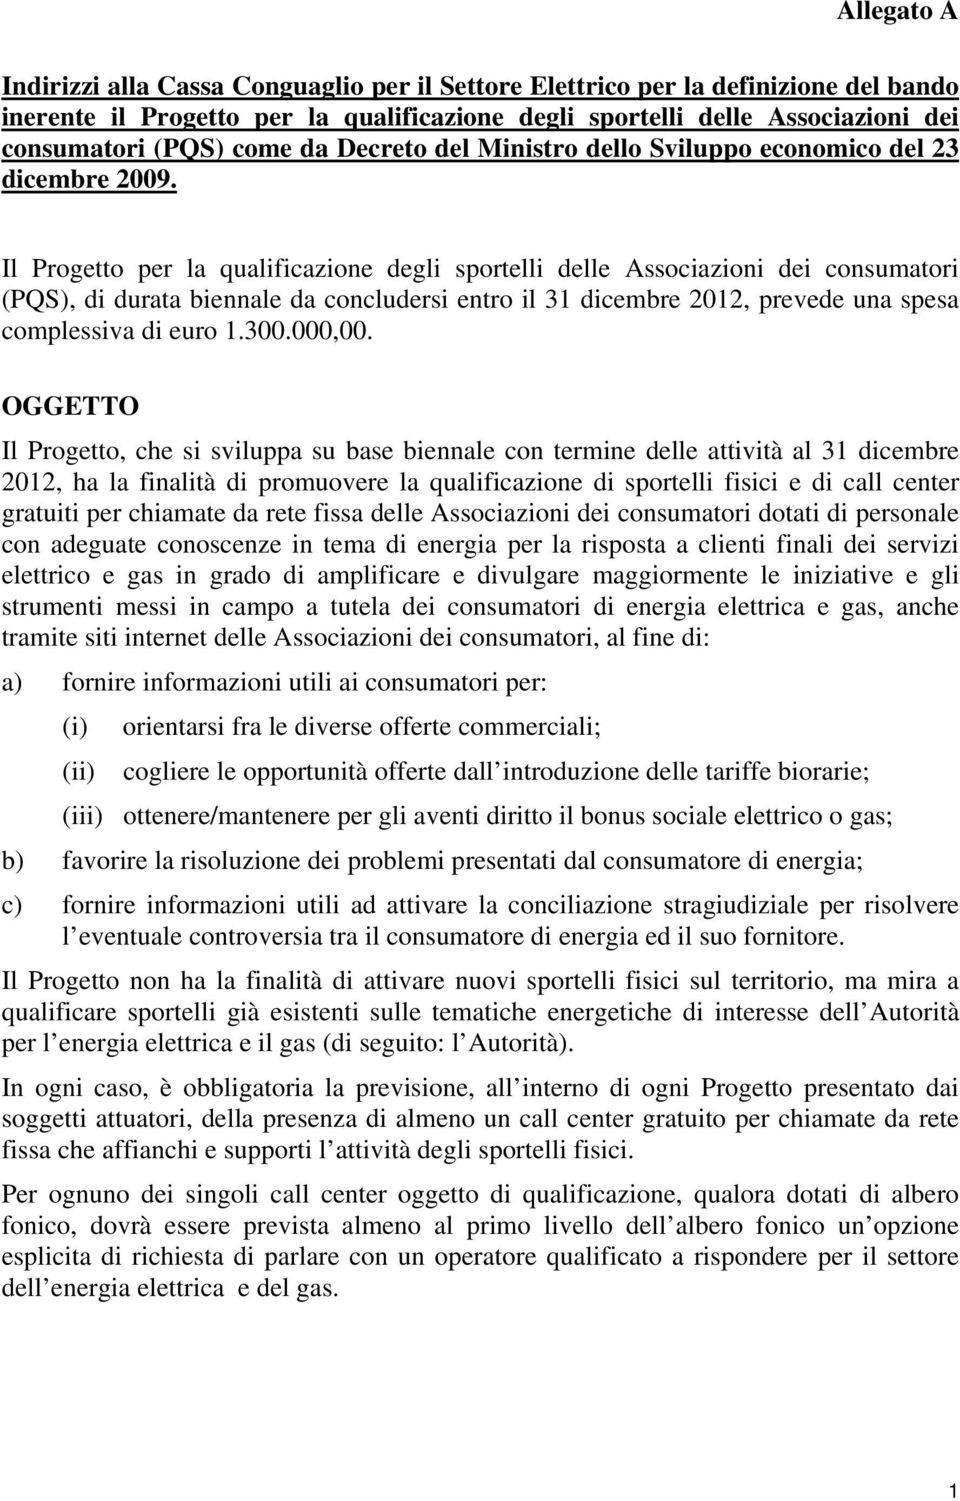 Il Progetto per la qualificazione degli sportelli delle Associazioni dei consumatori (PQS), di durata biennale da concludersi entro il 31 dicembre 2012, prevede una spesa complessiva di euro 1.300.